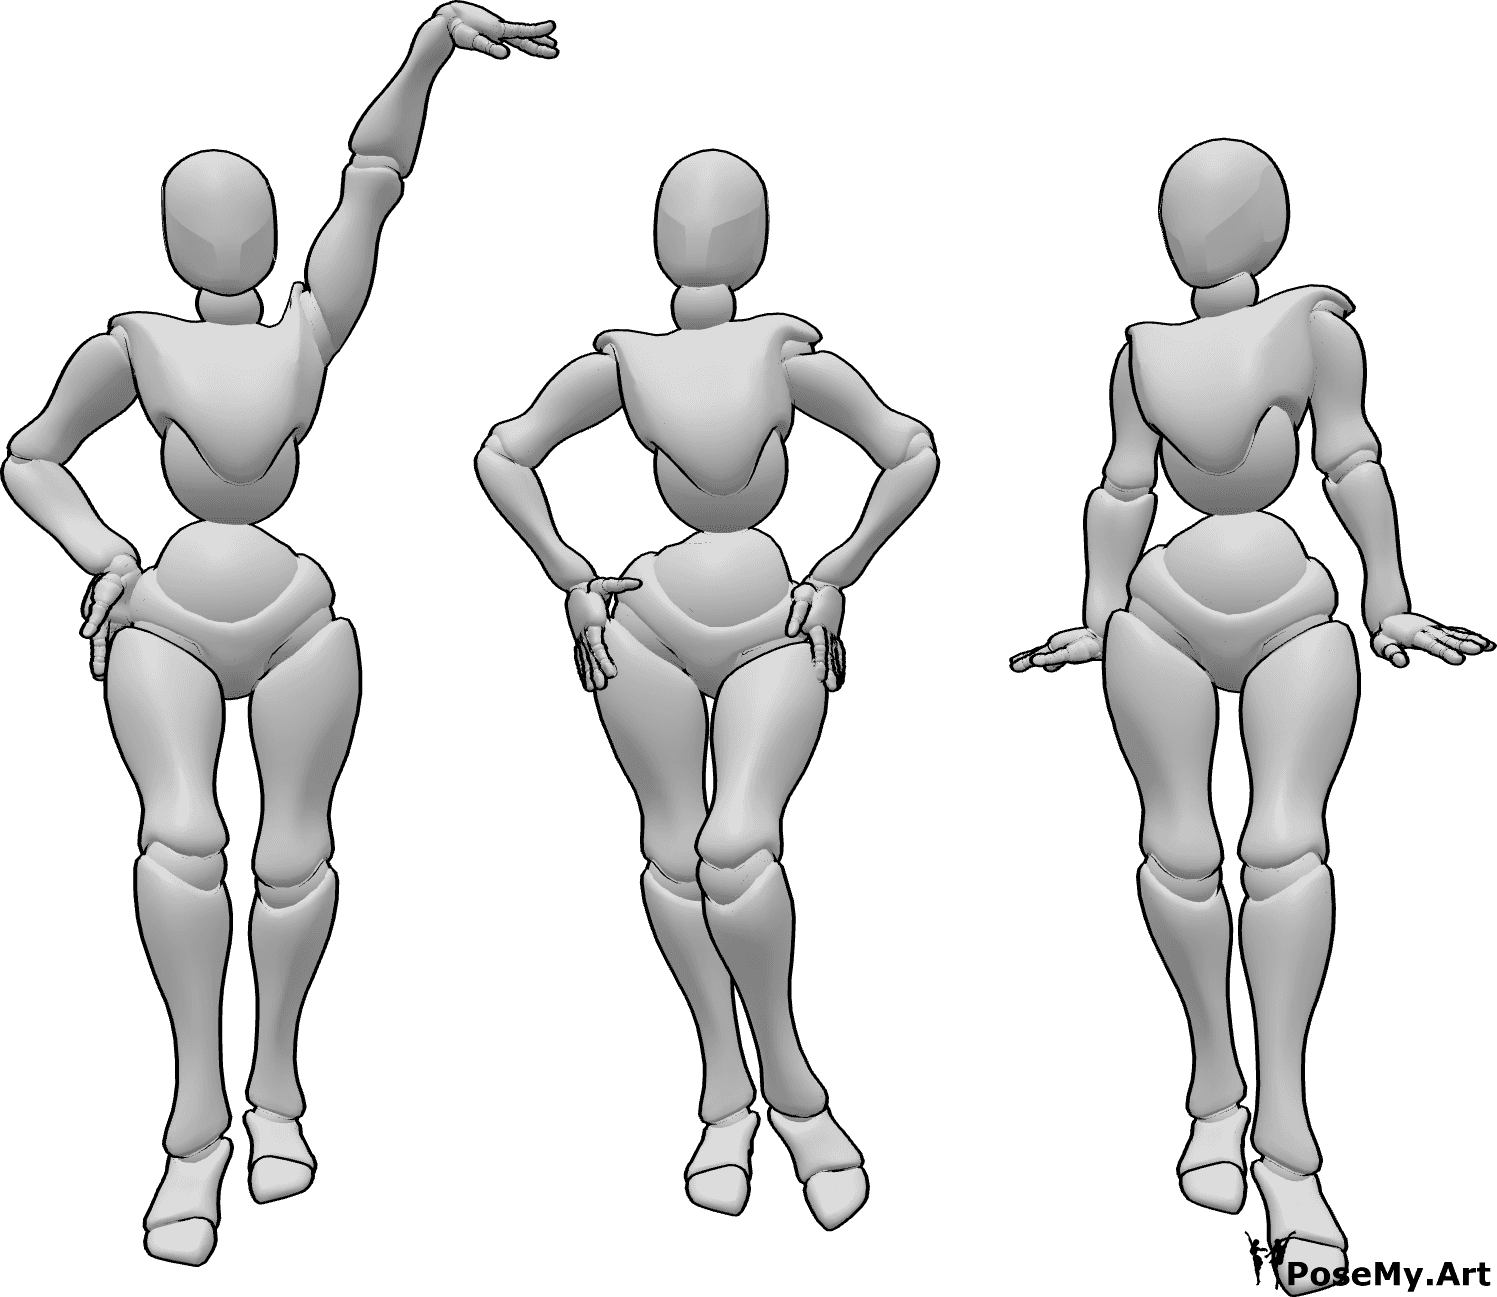 Référence des poses- Trois femmes debout posent - Trois femmes se tiennent debout et posent comme des mannequins.